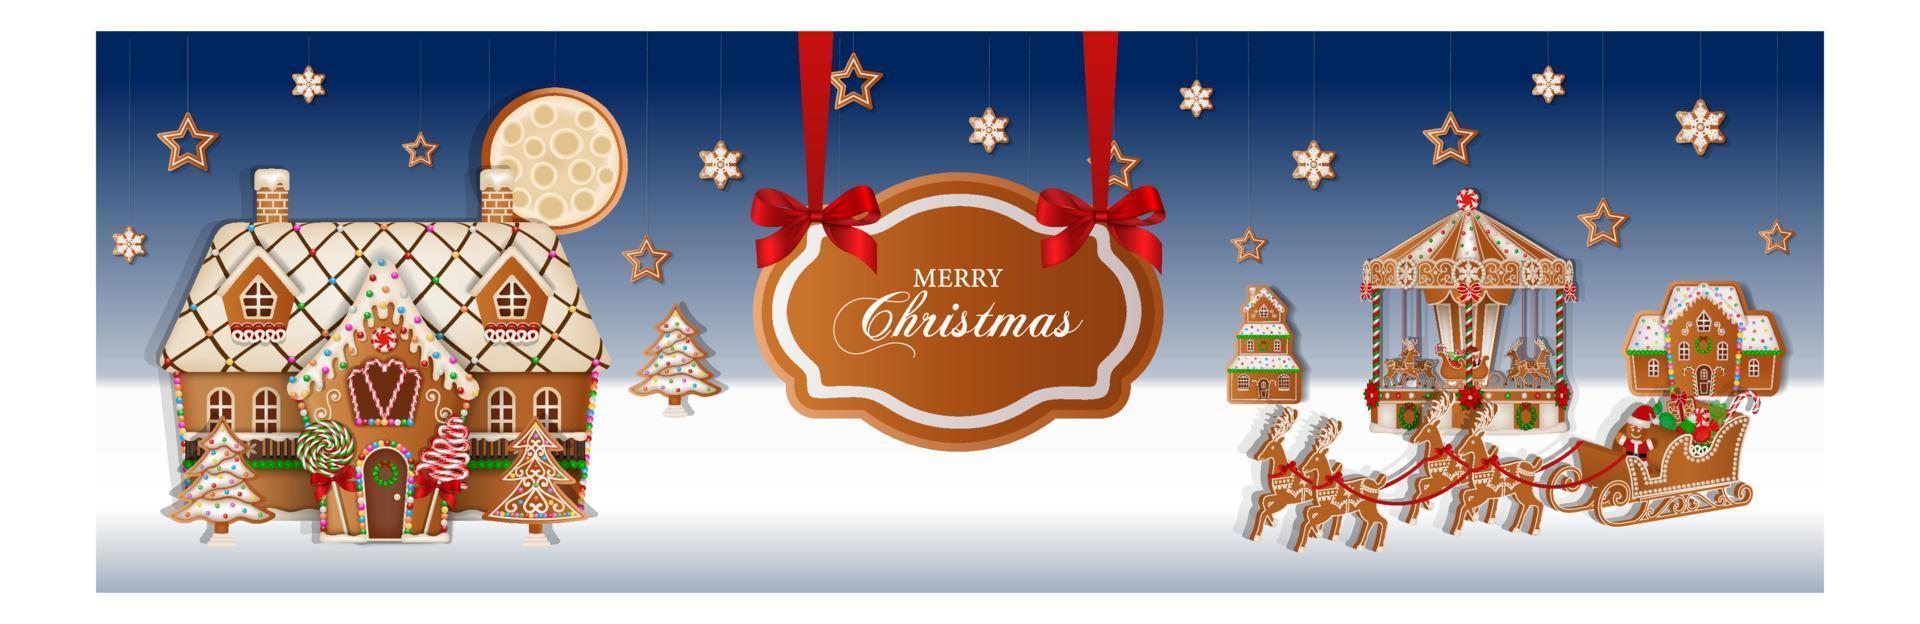 pancarta navideña con paisaje de pan de jengibre. fondo de navidad con galletas de jengibre y dulces vector